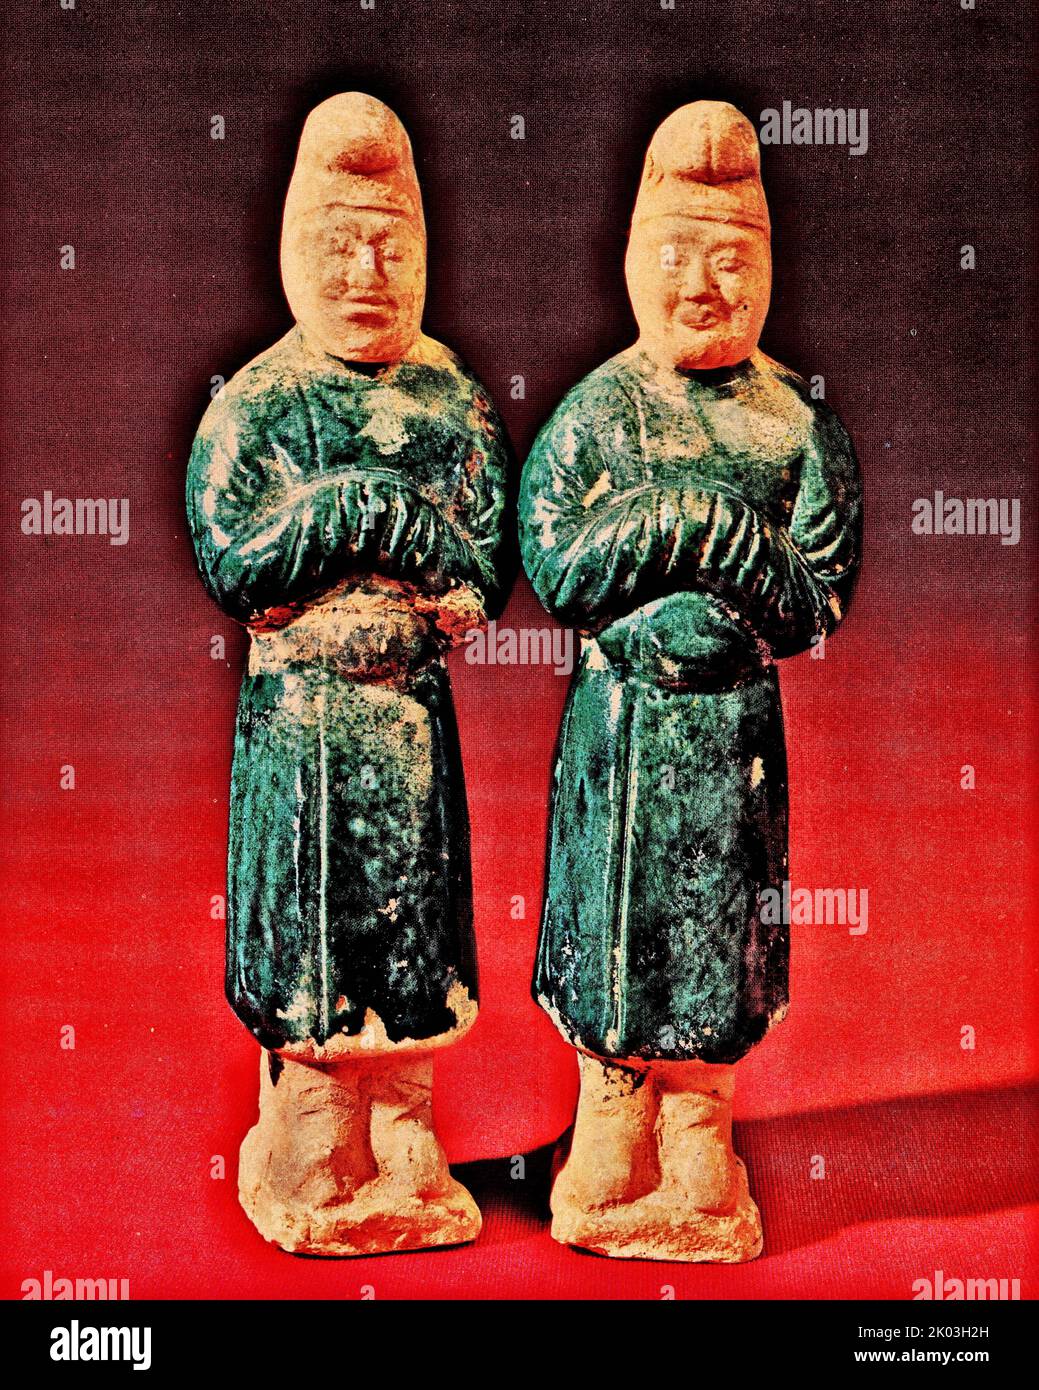 Tang-Dynastie-Figuren mit weißen, blau glasierten, auf einer kleinen quadratischen Plattform stehend, mit gefesselten Köpfen und langen Blusen mit rundem Hals und schmalen Ärmeln. Hüftgurt, doppelter Blick nach vorne, ernsthafter und unterwürfiger Ausdruck. Die Figuren sind mit blauer Glasur bedeckt. Kopf, Krone und Füße sind alle unglasiert, und die Produktion ist relativ einfach. Die beiden Figuren haben die gleiche Haltung und Kleidung. Stockfoto